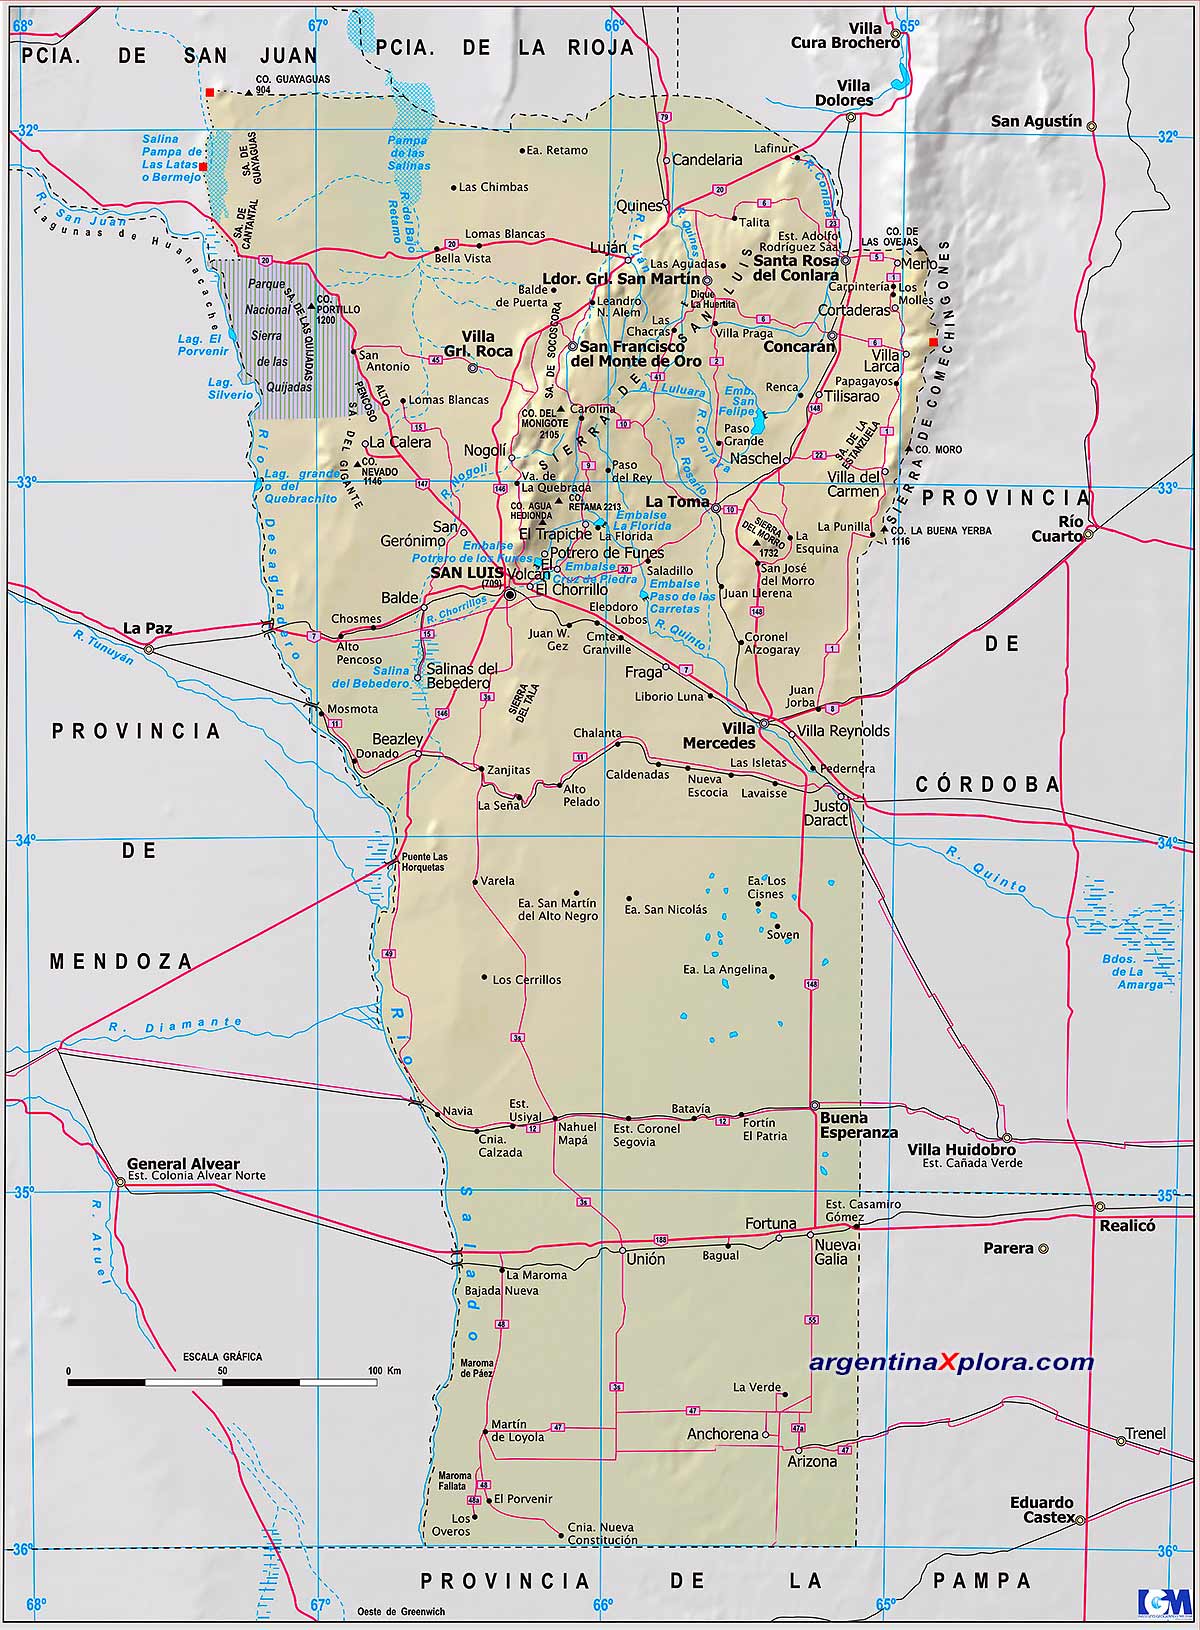 Mapa de la Provincia de San Luis - Mapa de rutas y localidades Argentina